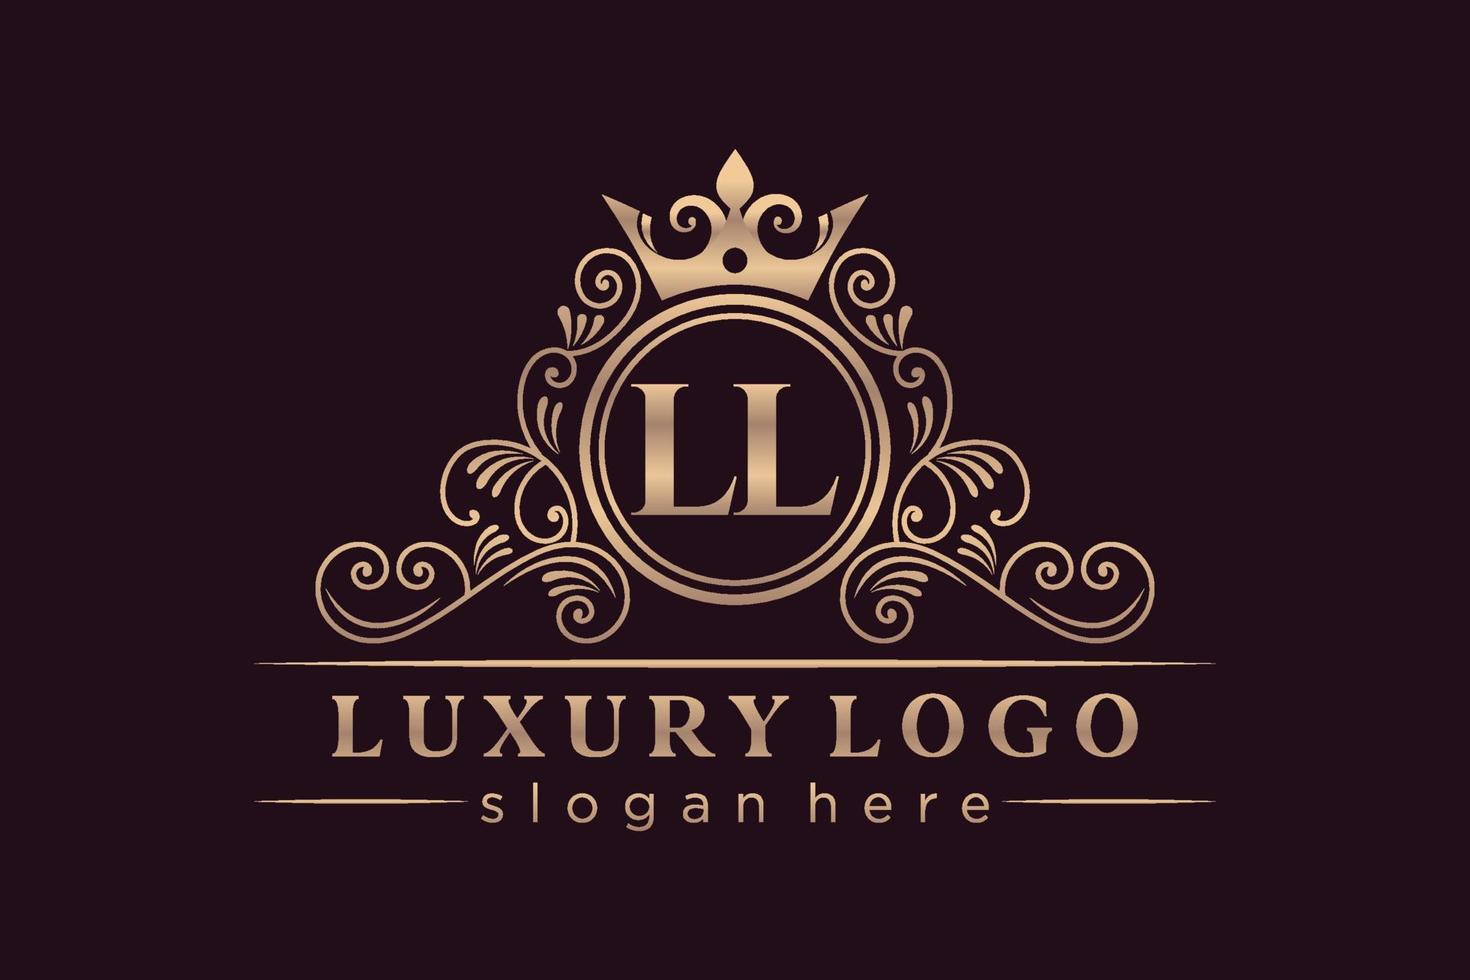 LL Initial Letter Gold calligraphic feminine floral hand drawn heraldic monogram antique vintage style luxury logo design Premium Vector